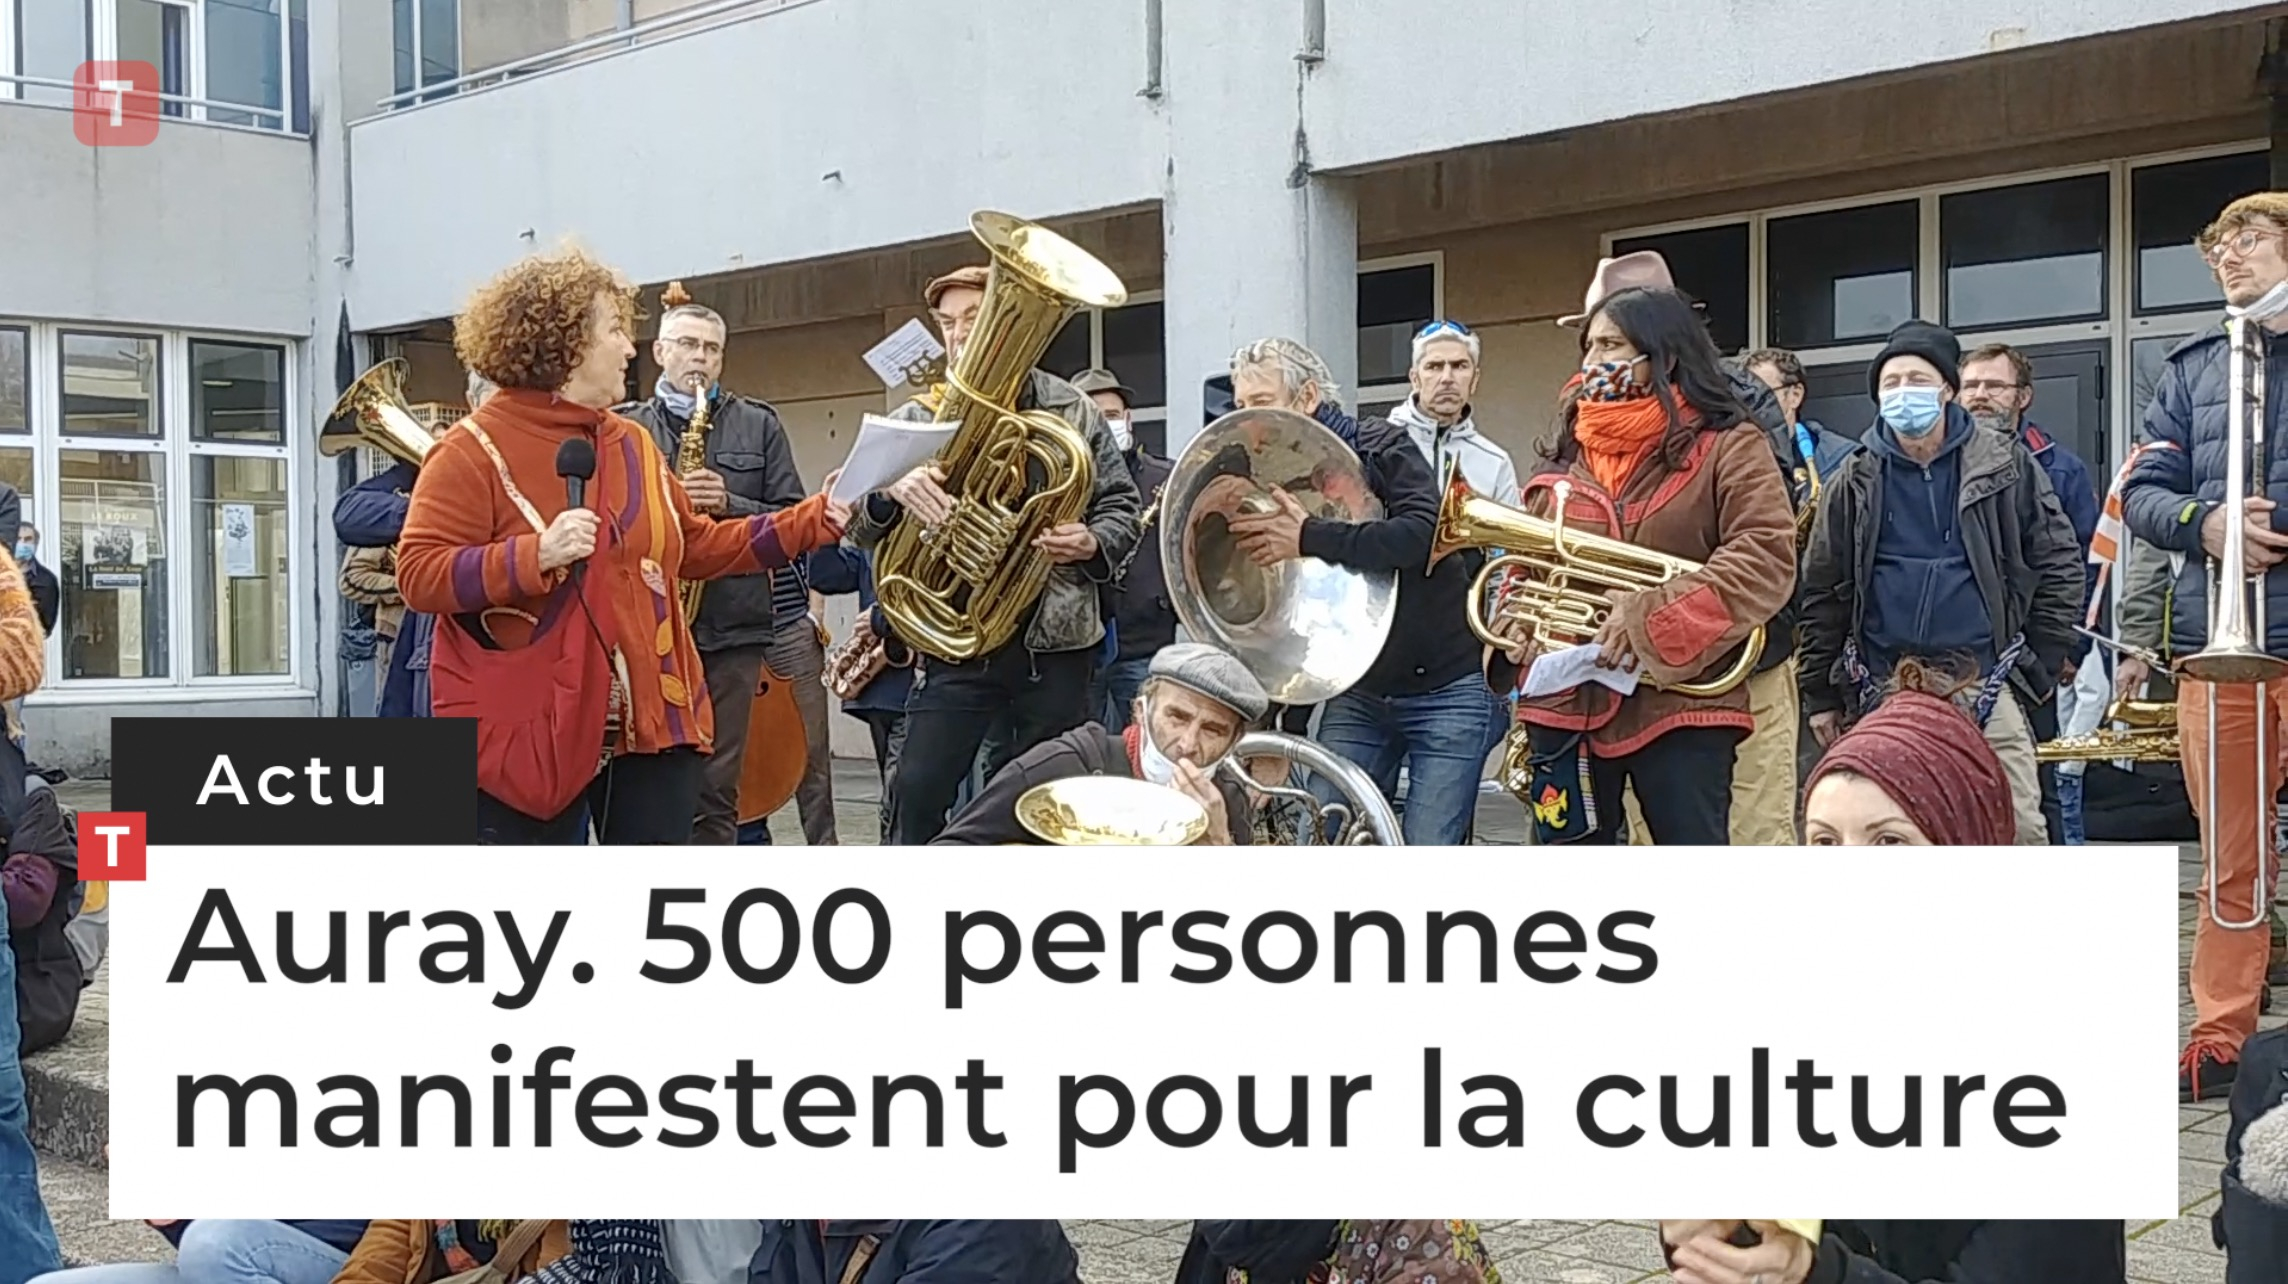 Auray. 500 personnes manifestent pour la culture (Le Télégramme)